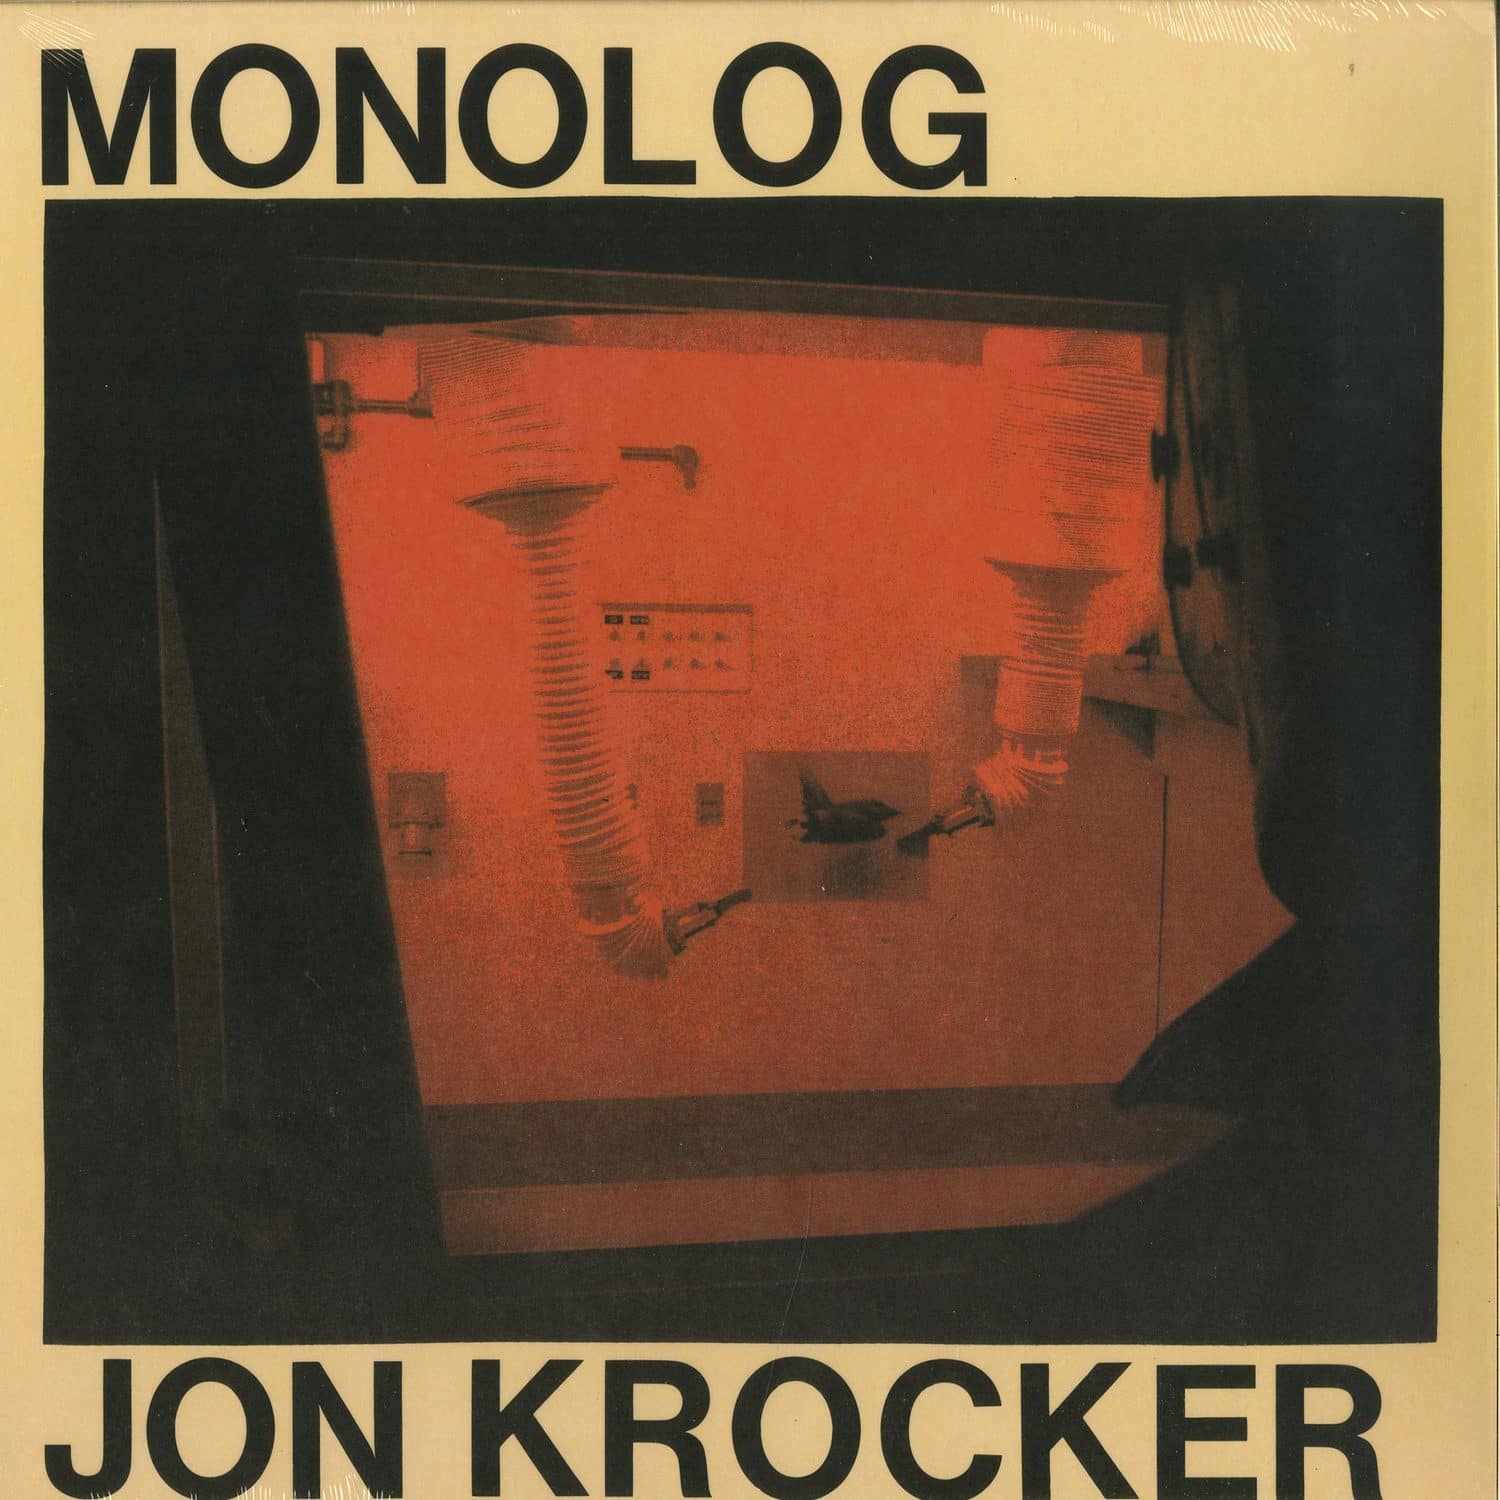 Jon Krocker - MONOLOG 